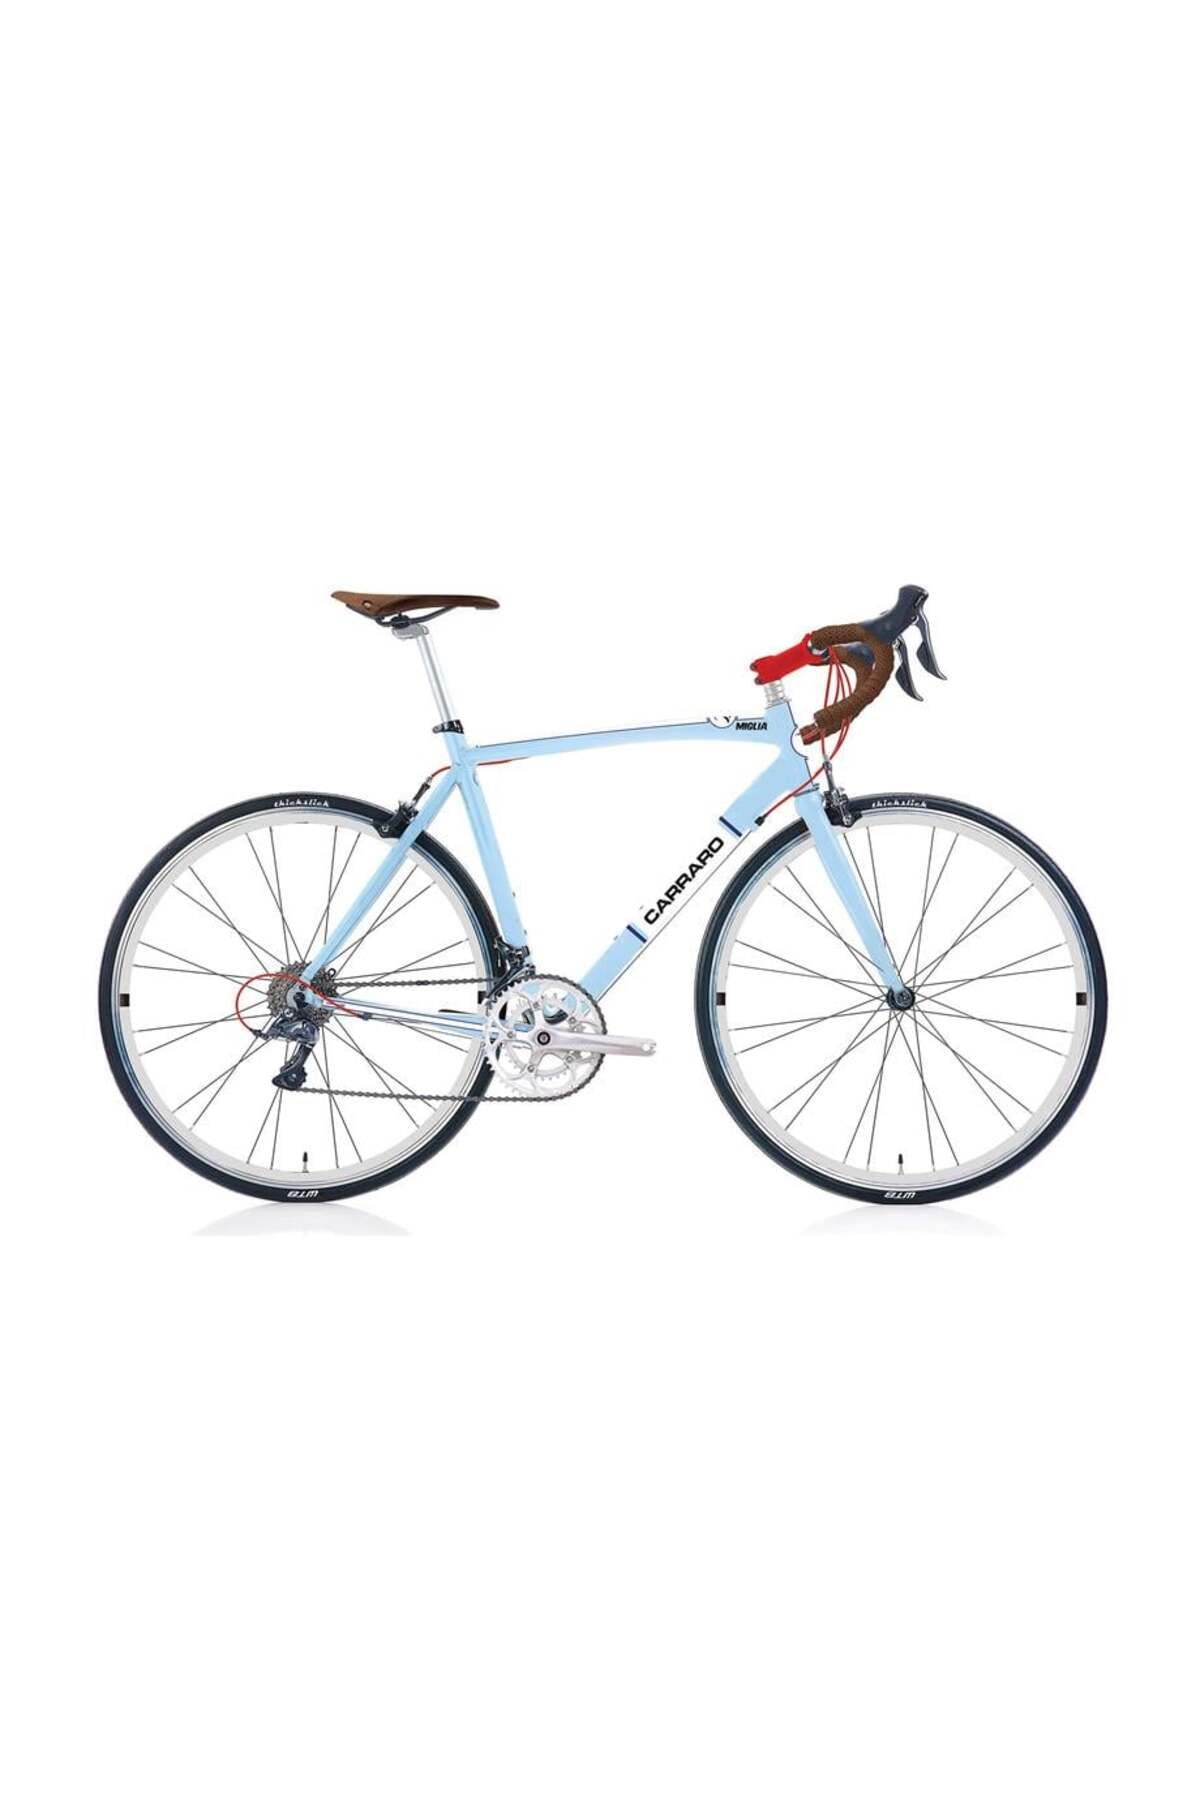 Carraro Mıglıa Erkek Yarış Bisikleti 540h V 28 Jant 16 Vites Açık Mavi Beyaz Kırmızı Koyu Mavi